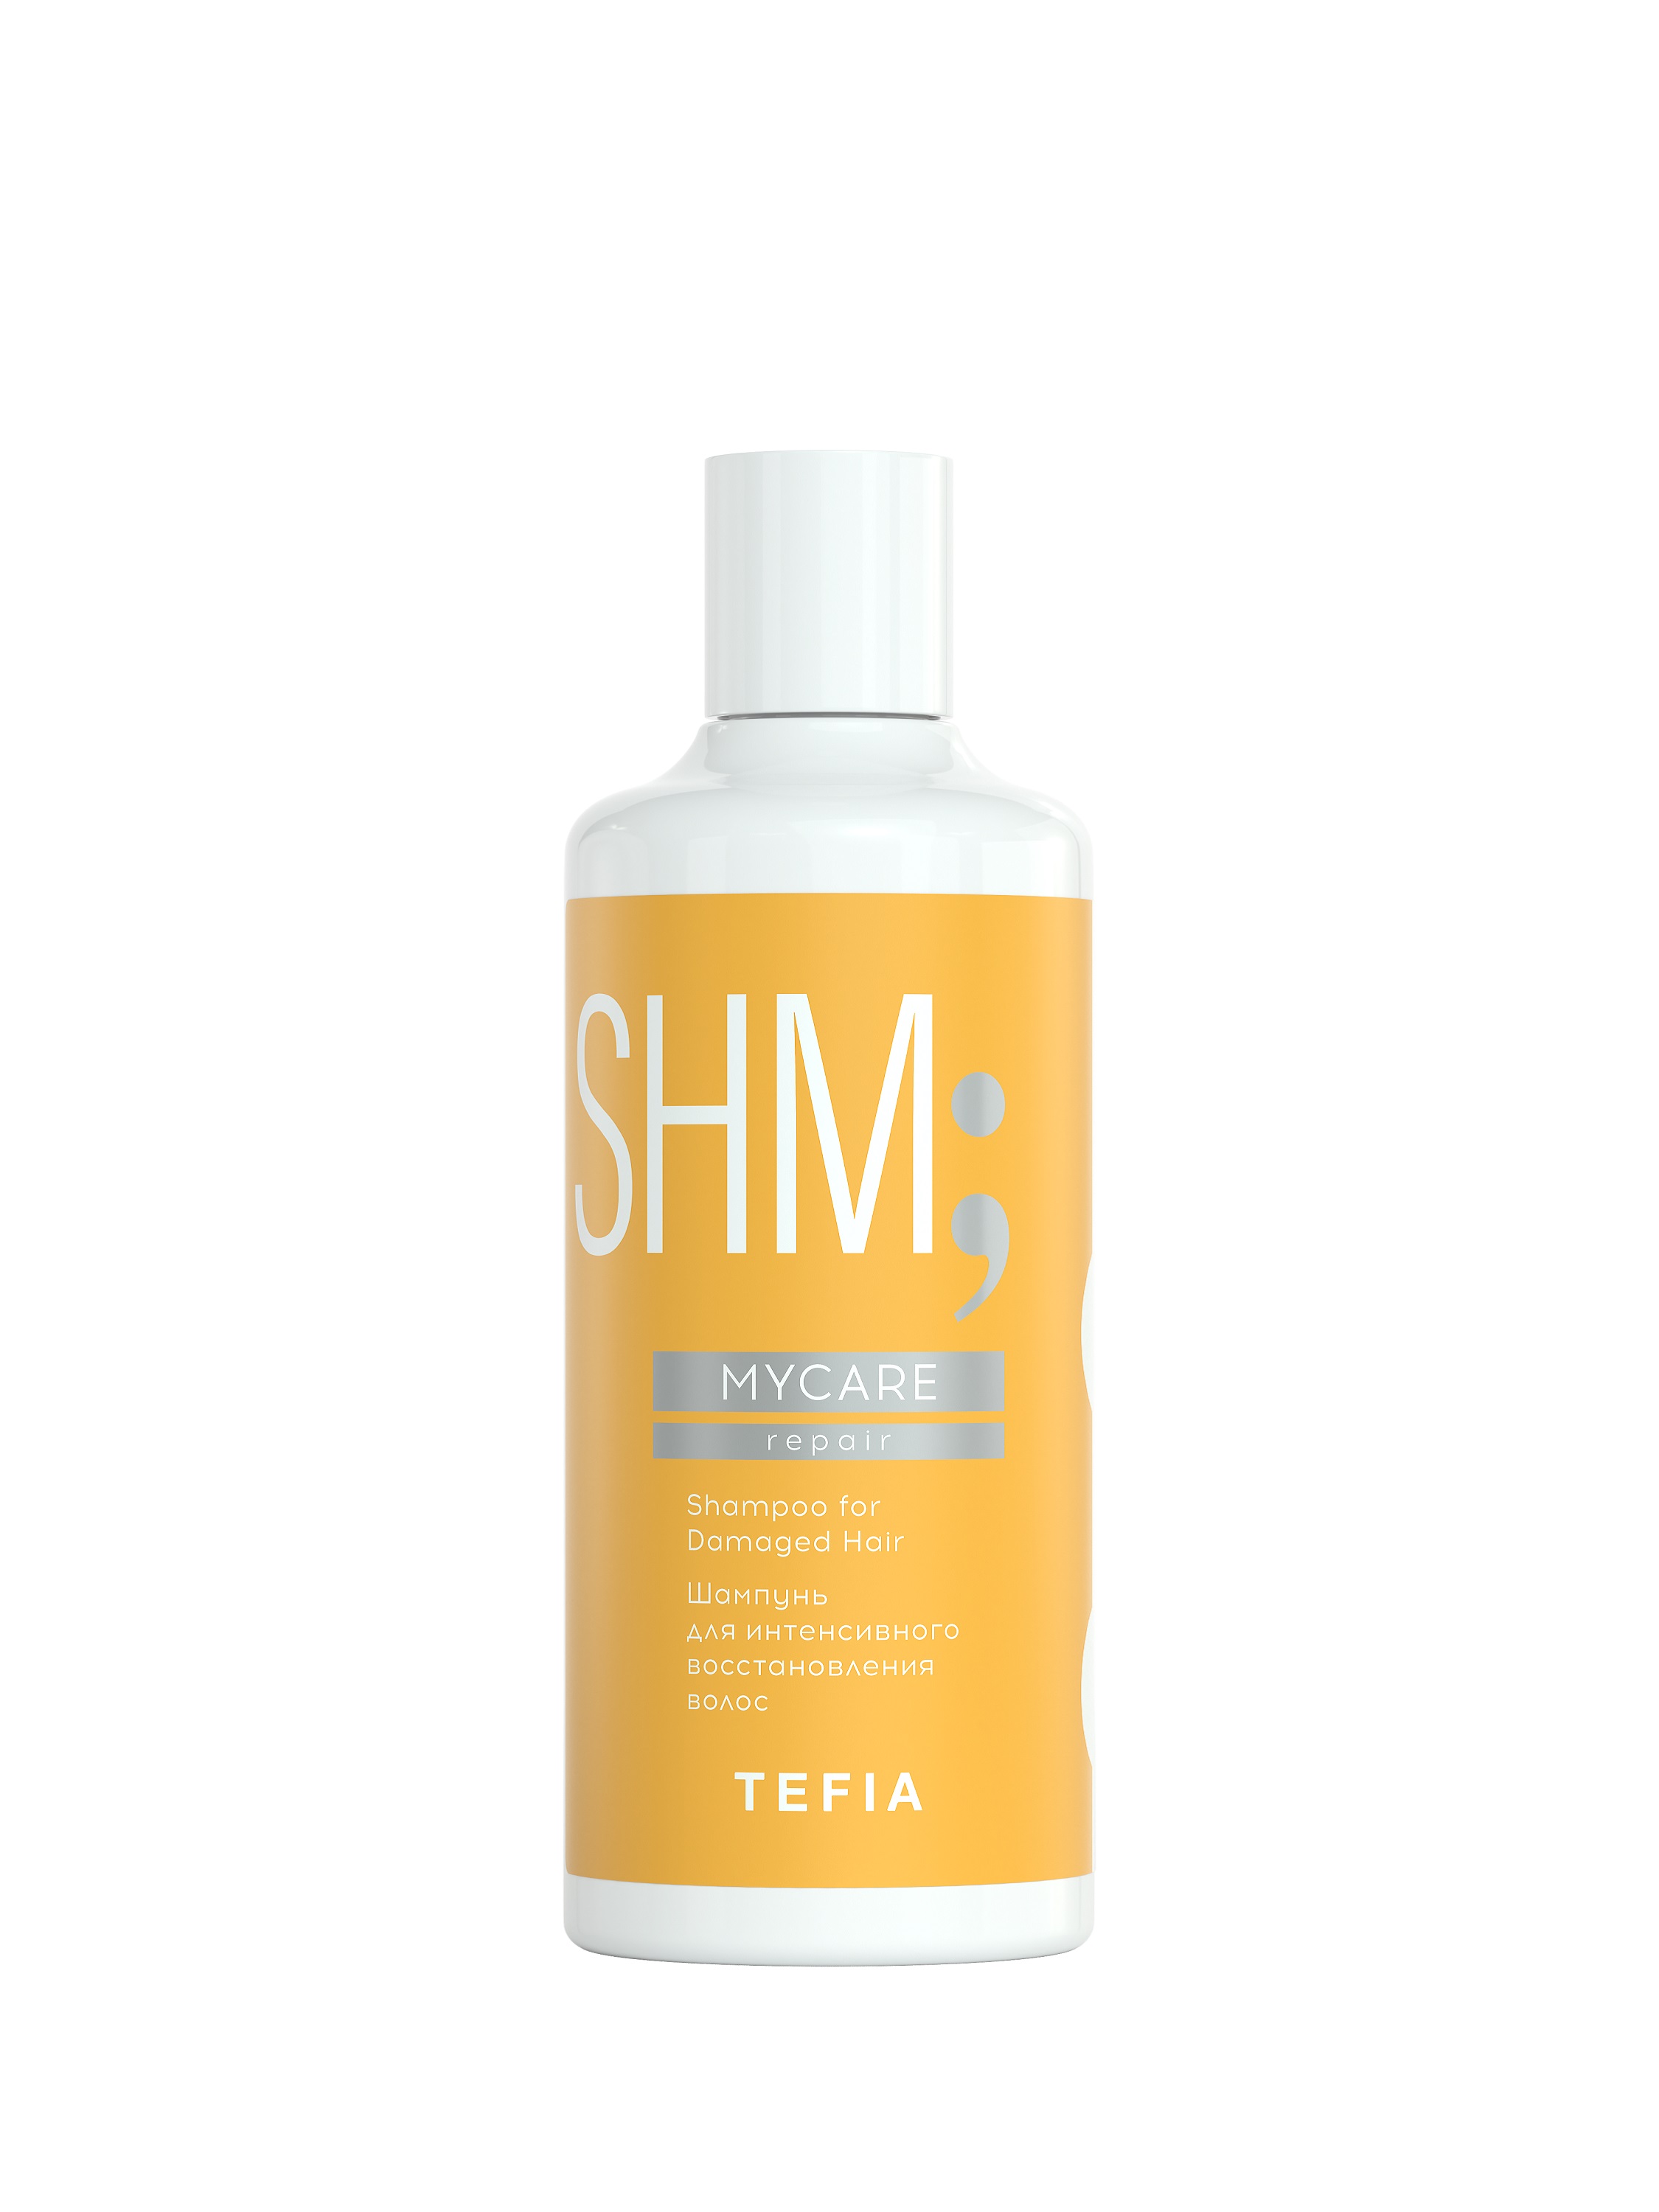 Купить Шампунь TEFIA для интенсивного восстановления волос профессиональный 300мл, Линия MYCARE, Shampoo for Damaged Hair, 300